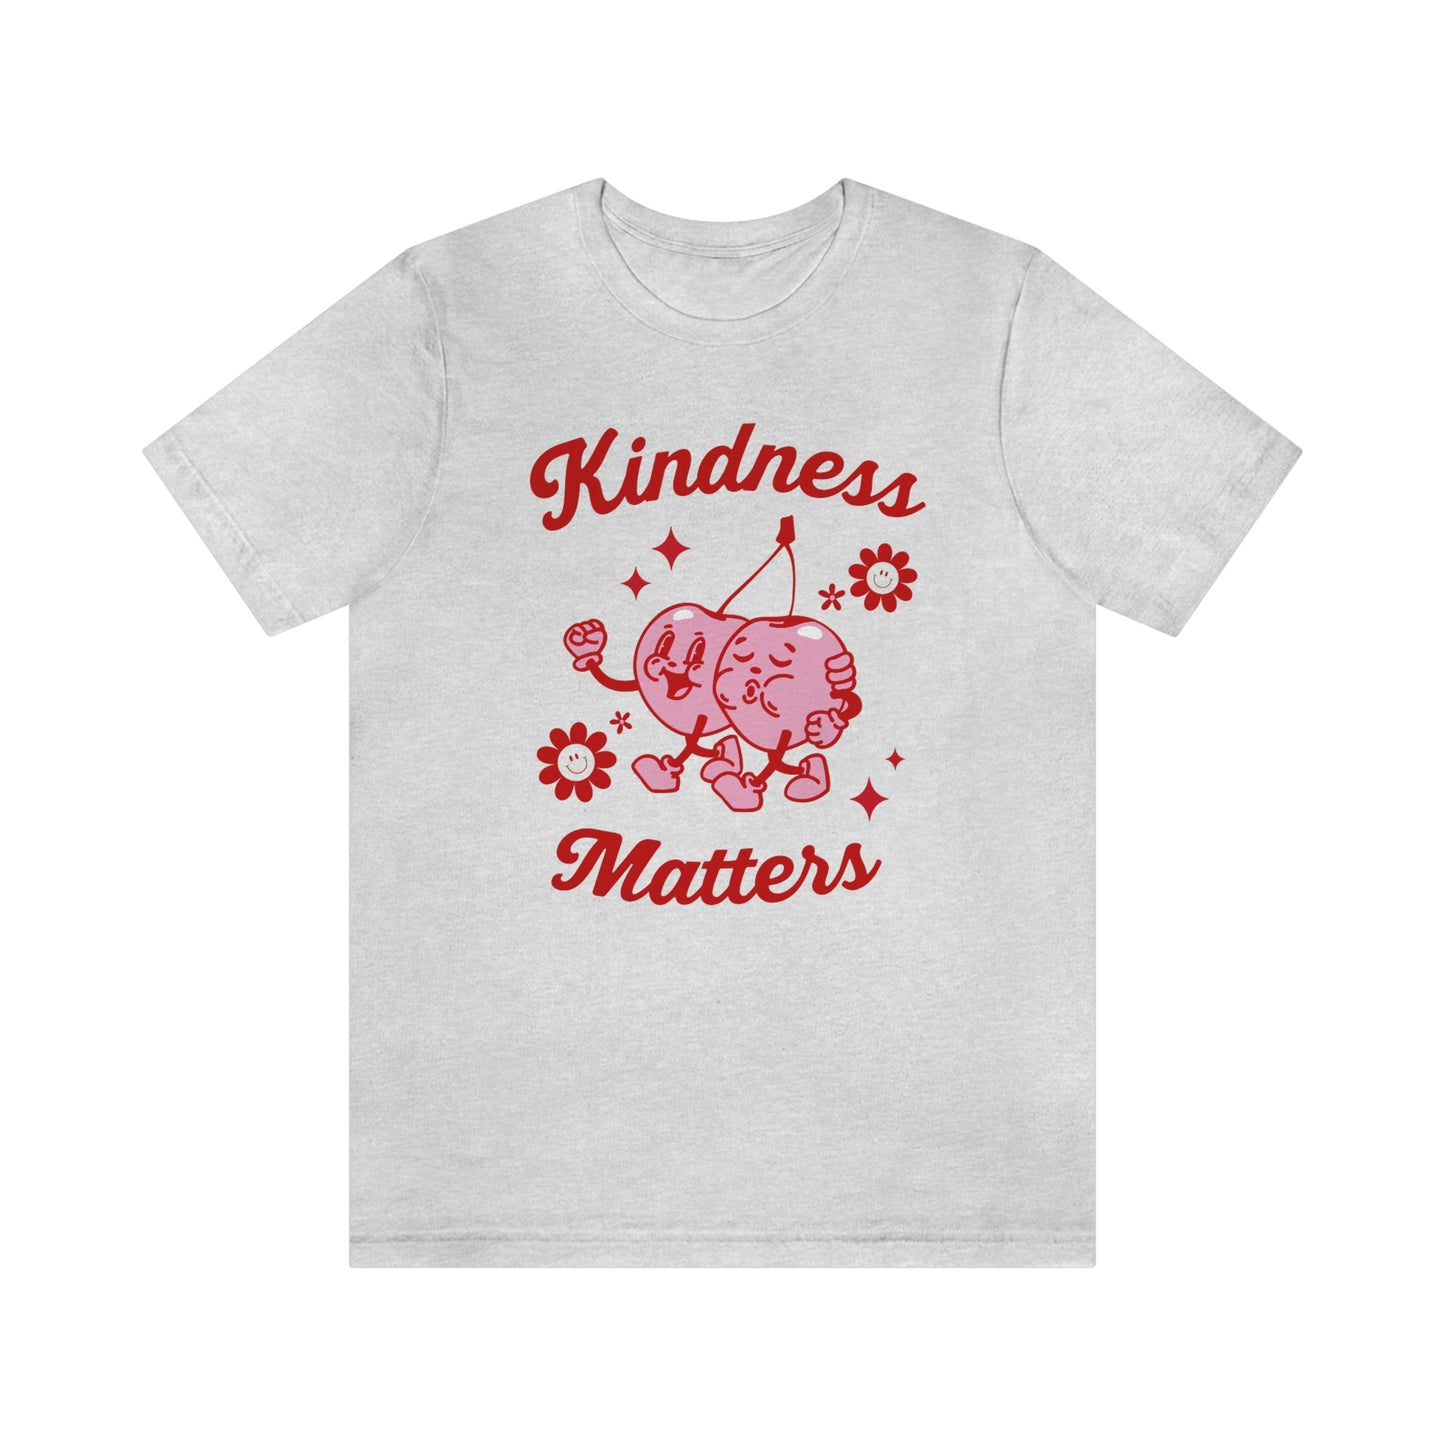 Kindness Matters Jersey T-Shirt